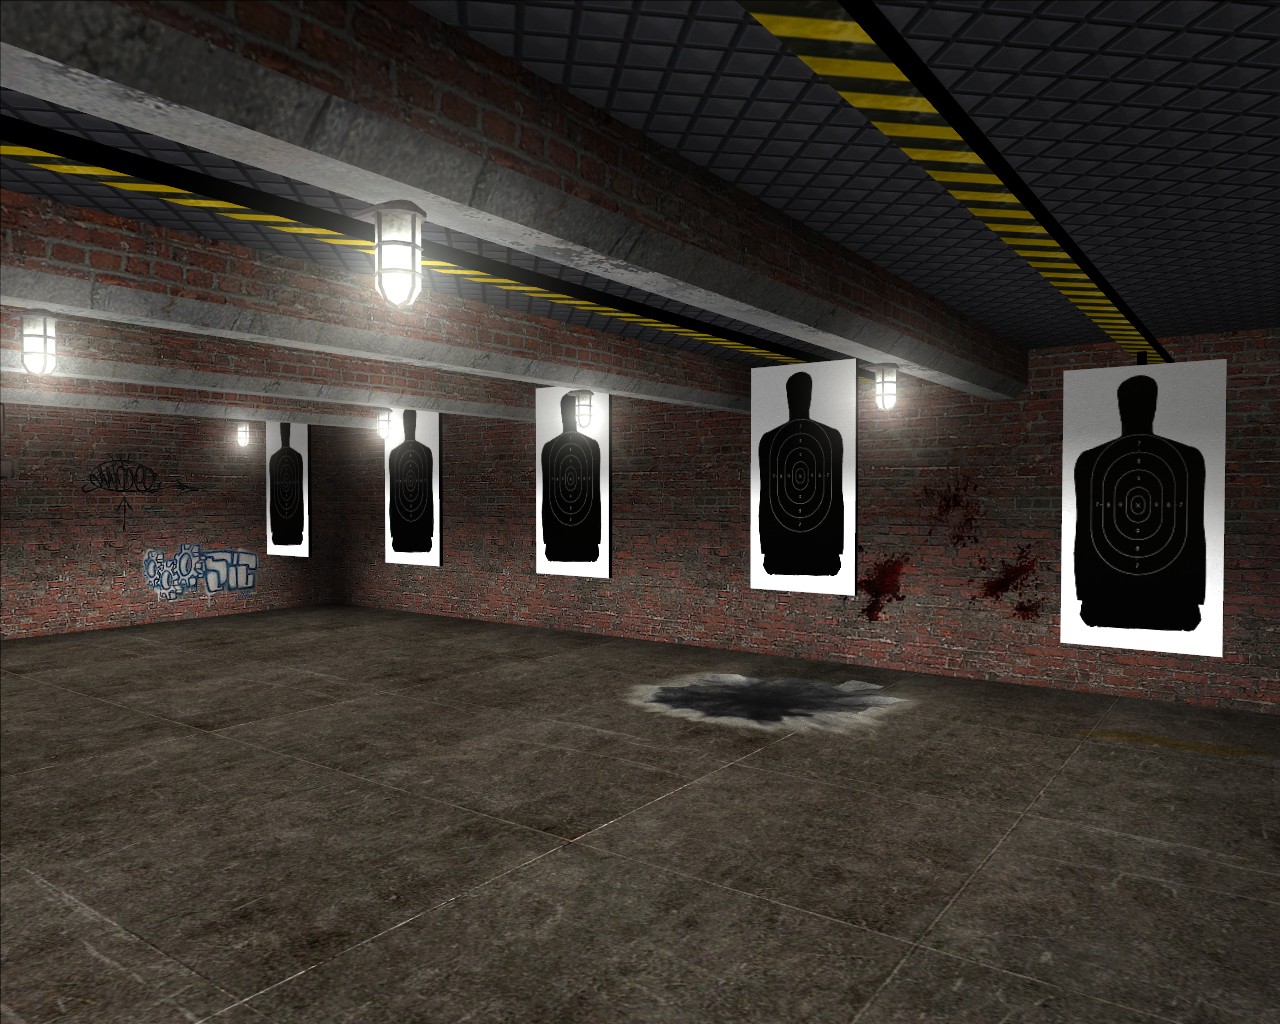 New shooting range image - Police Brutality mod for Half-Life 2 - Mod DB